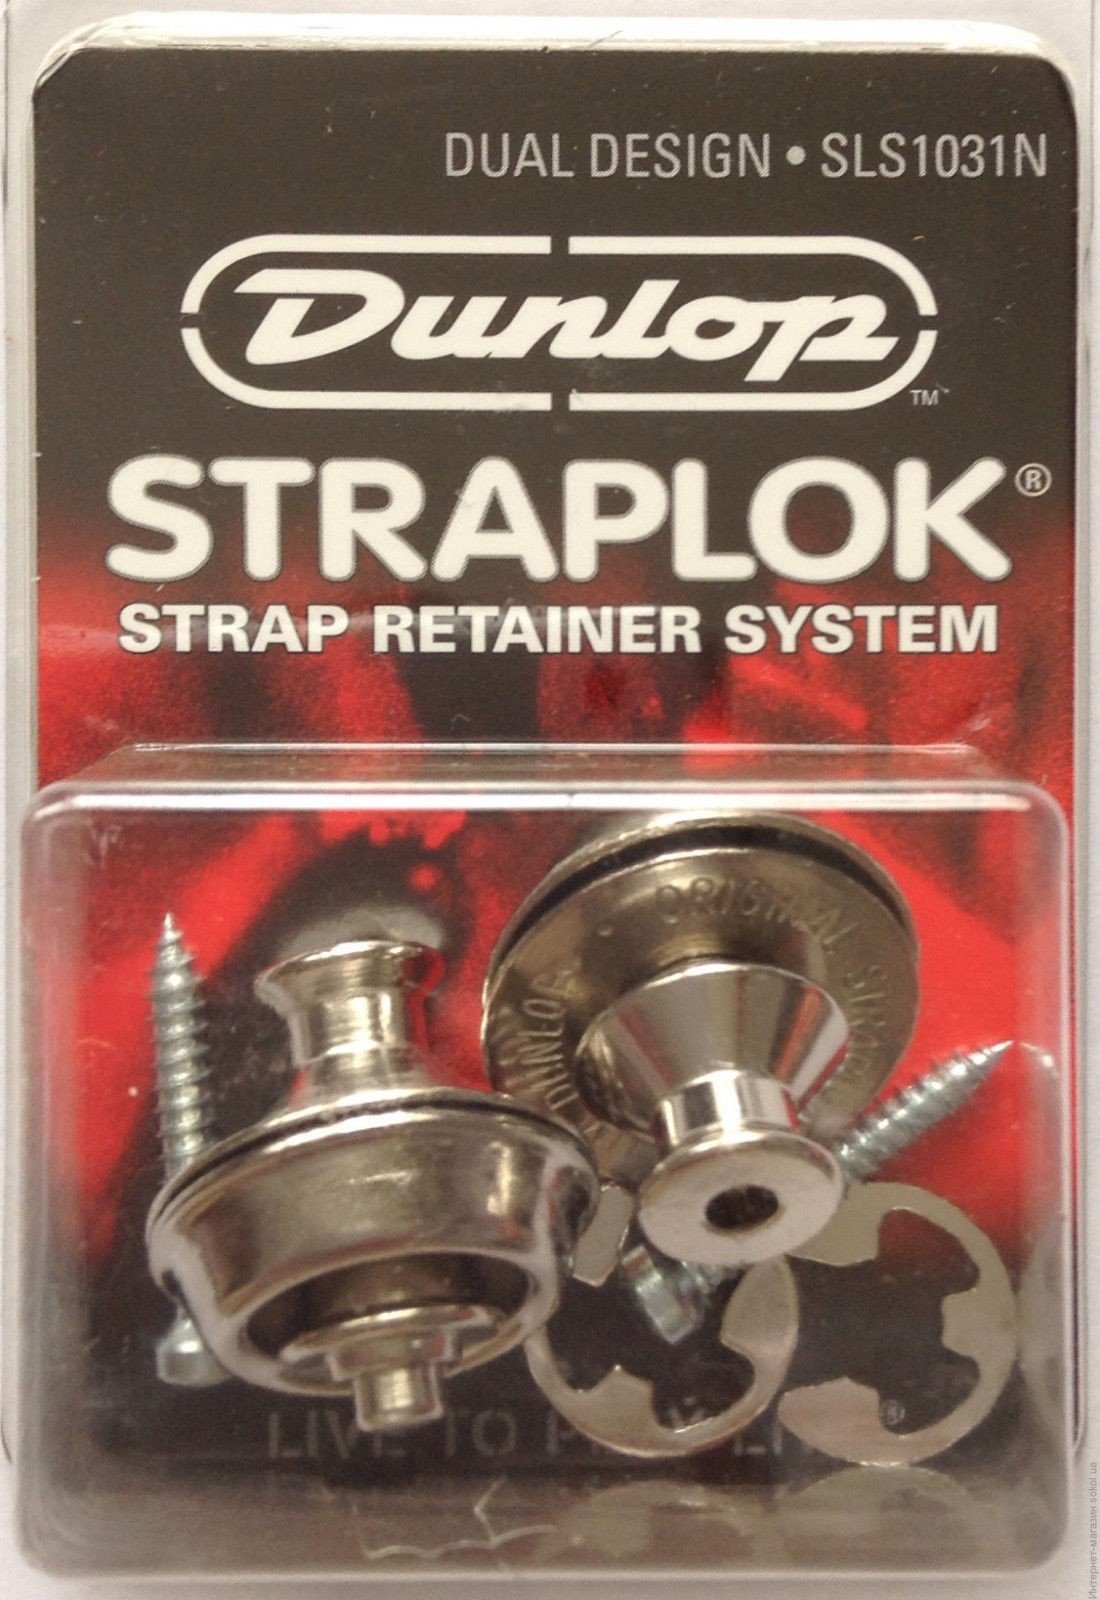 Dunlop SLS1031N Комплект креплений для гитарного ремня Straplock, никель